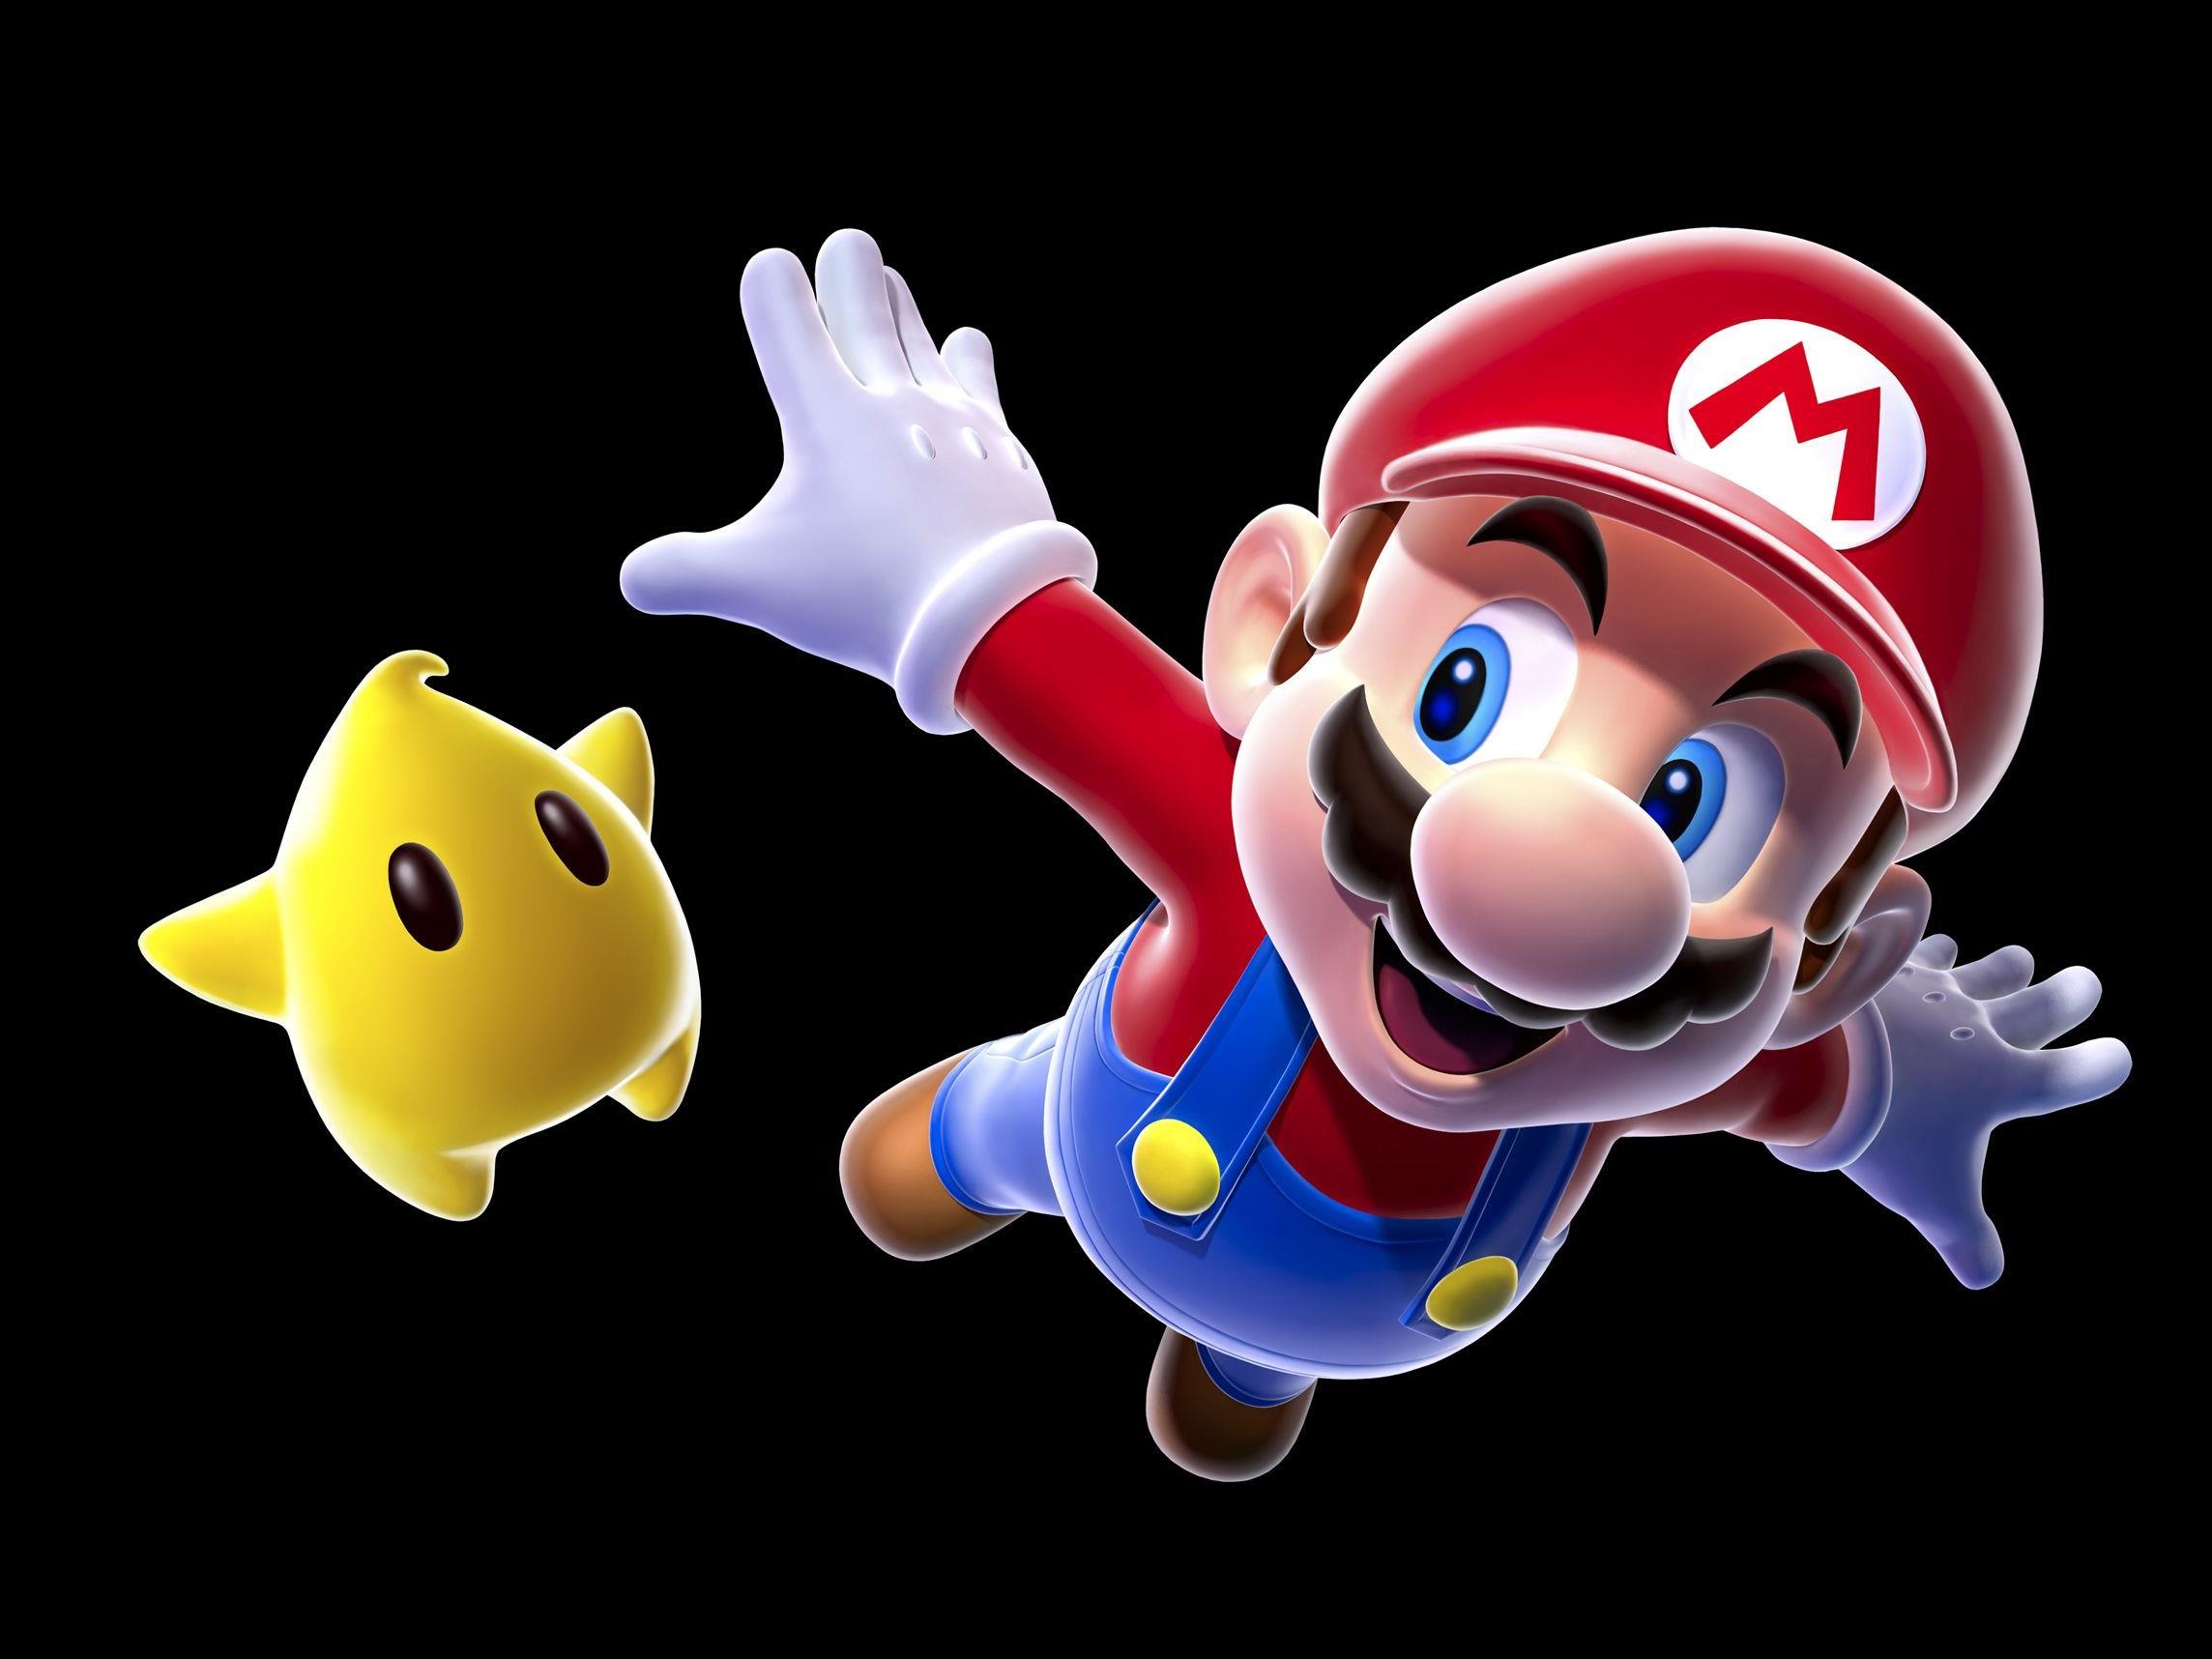 Ein Klassiker: "Mario" hat sich in den letzten drei Jahrzehnten kaum verändert.